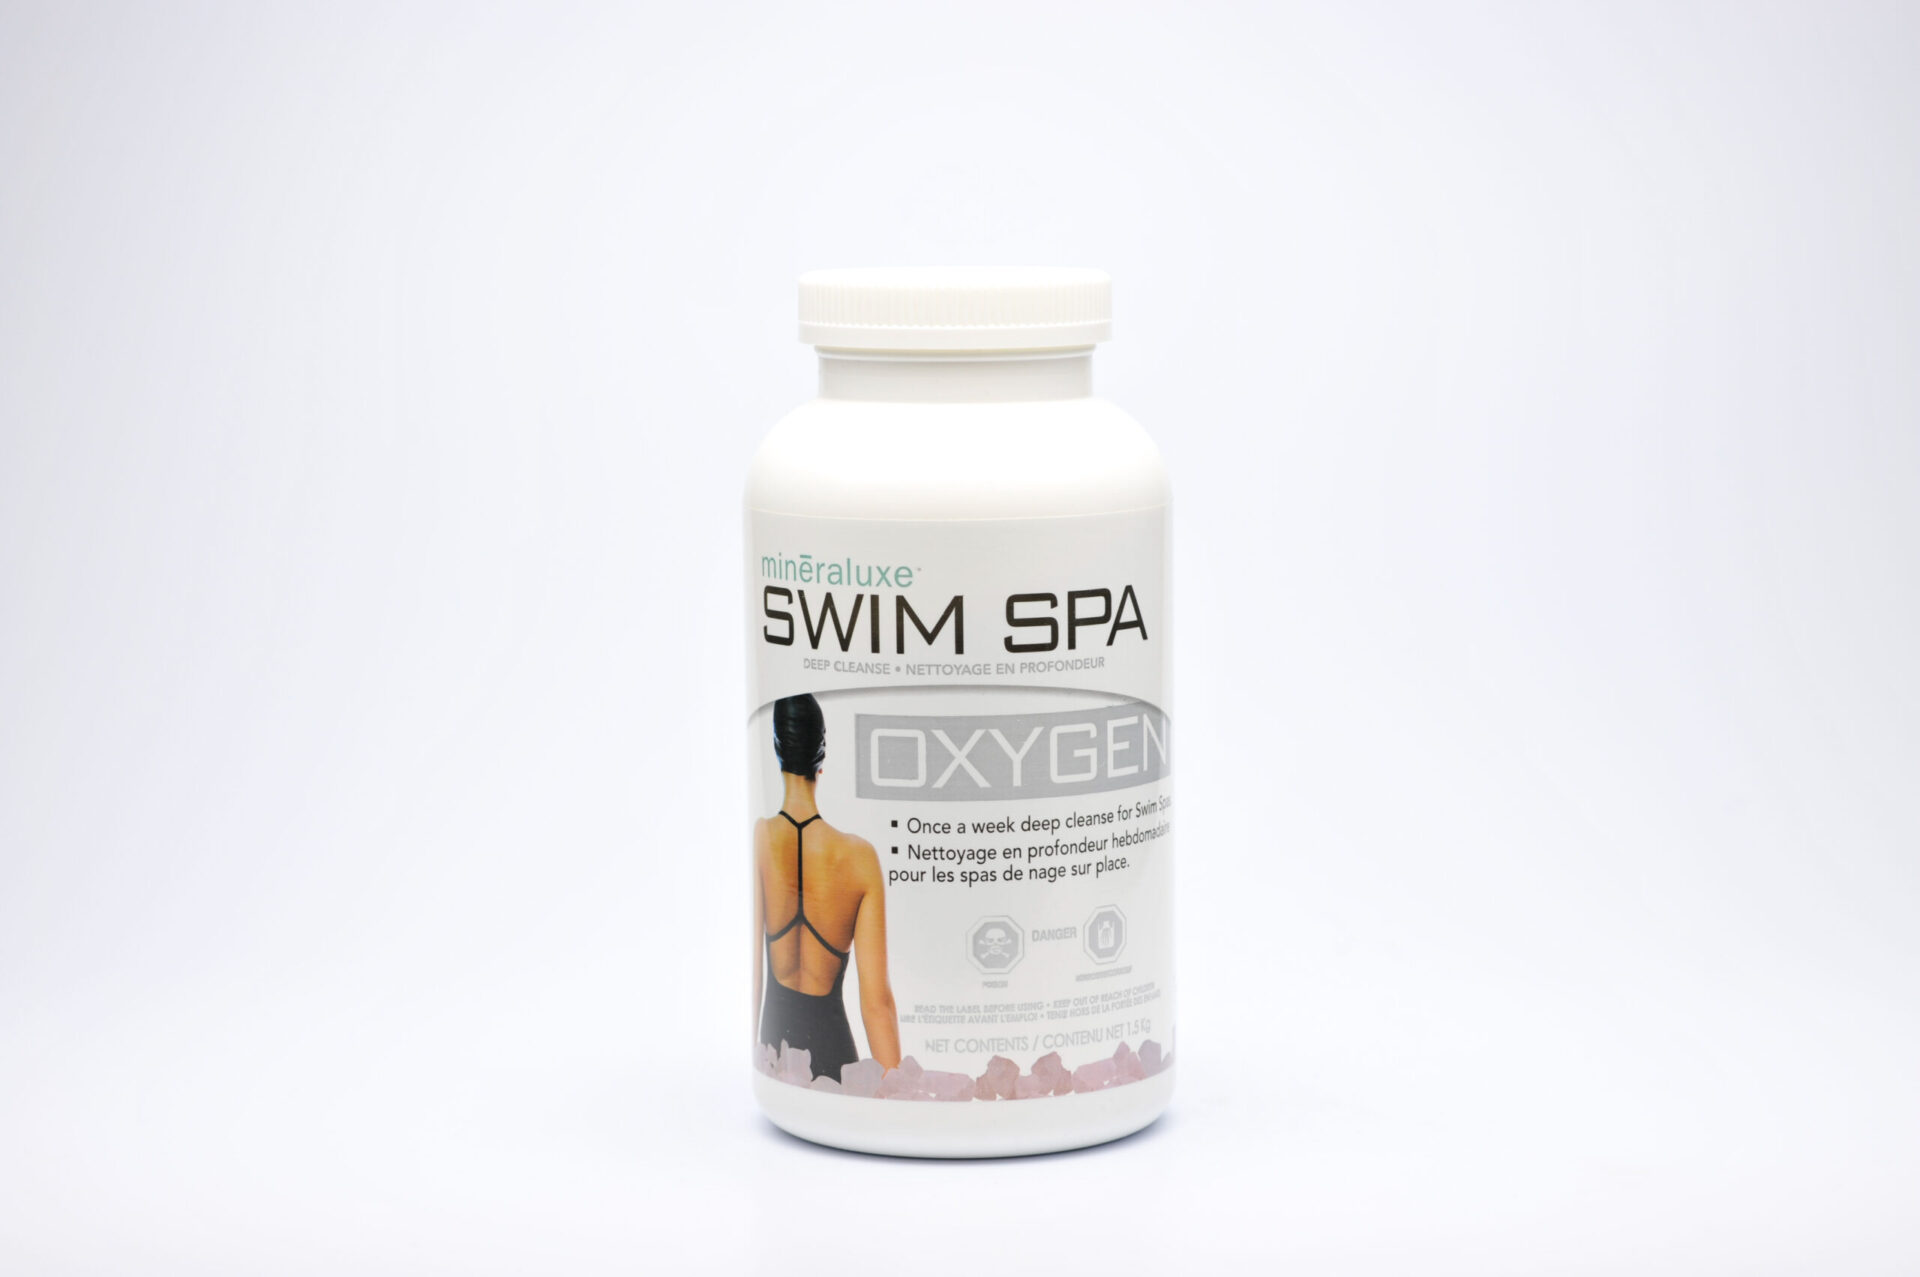 Swim Spa Oxygen 1.5 kg scaled - MINERLUXE SWIM SPA OXYGEN - 1.5kg